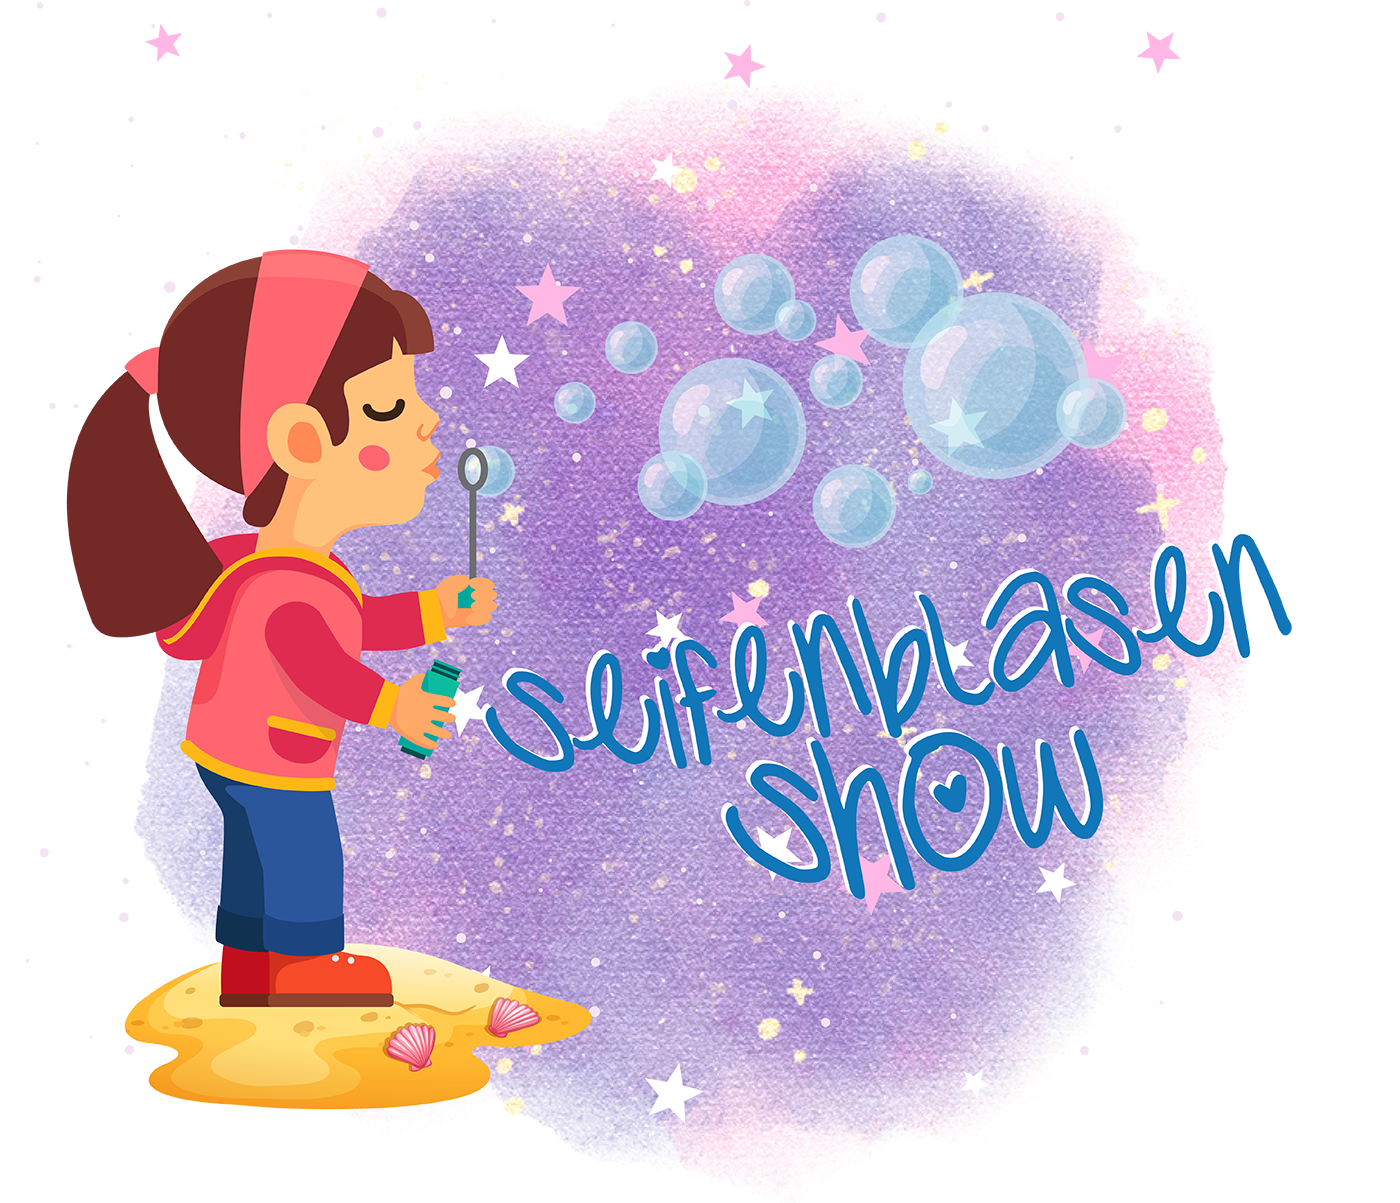 Seifenblasen Show